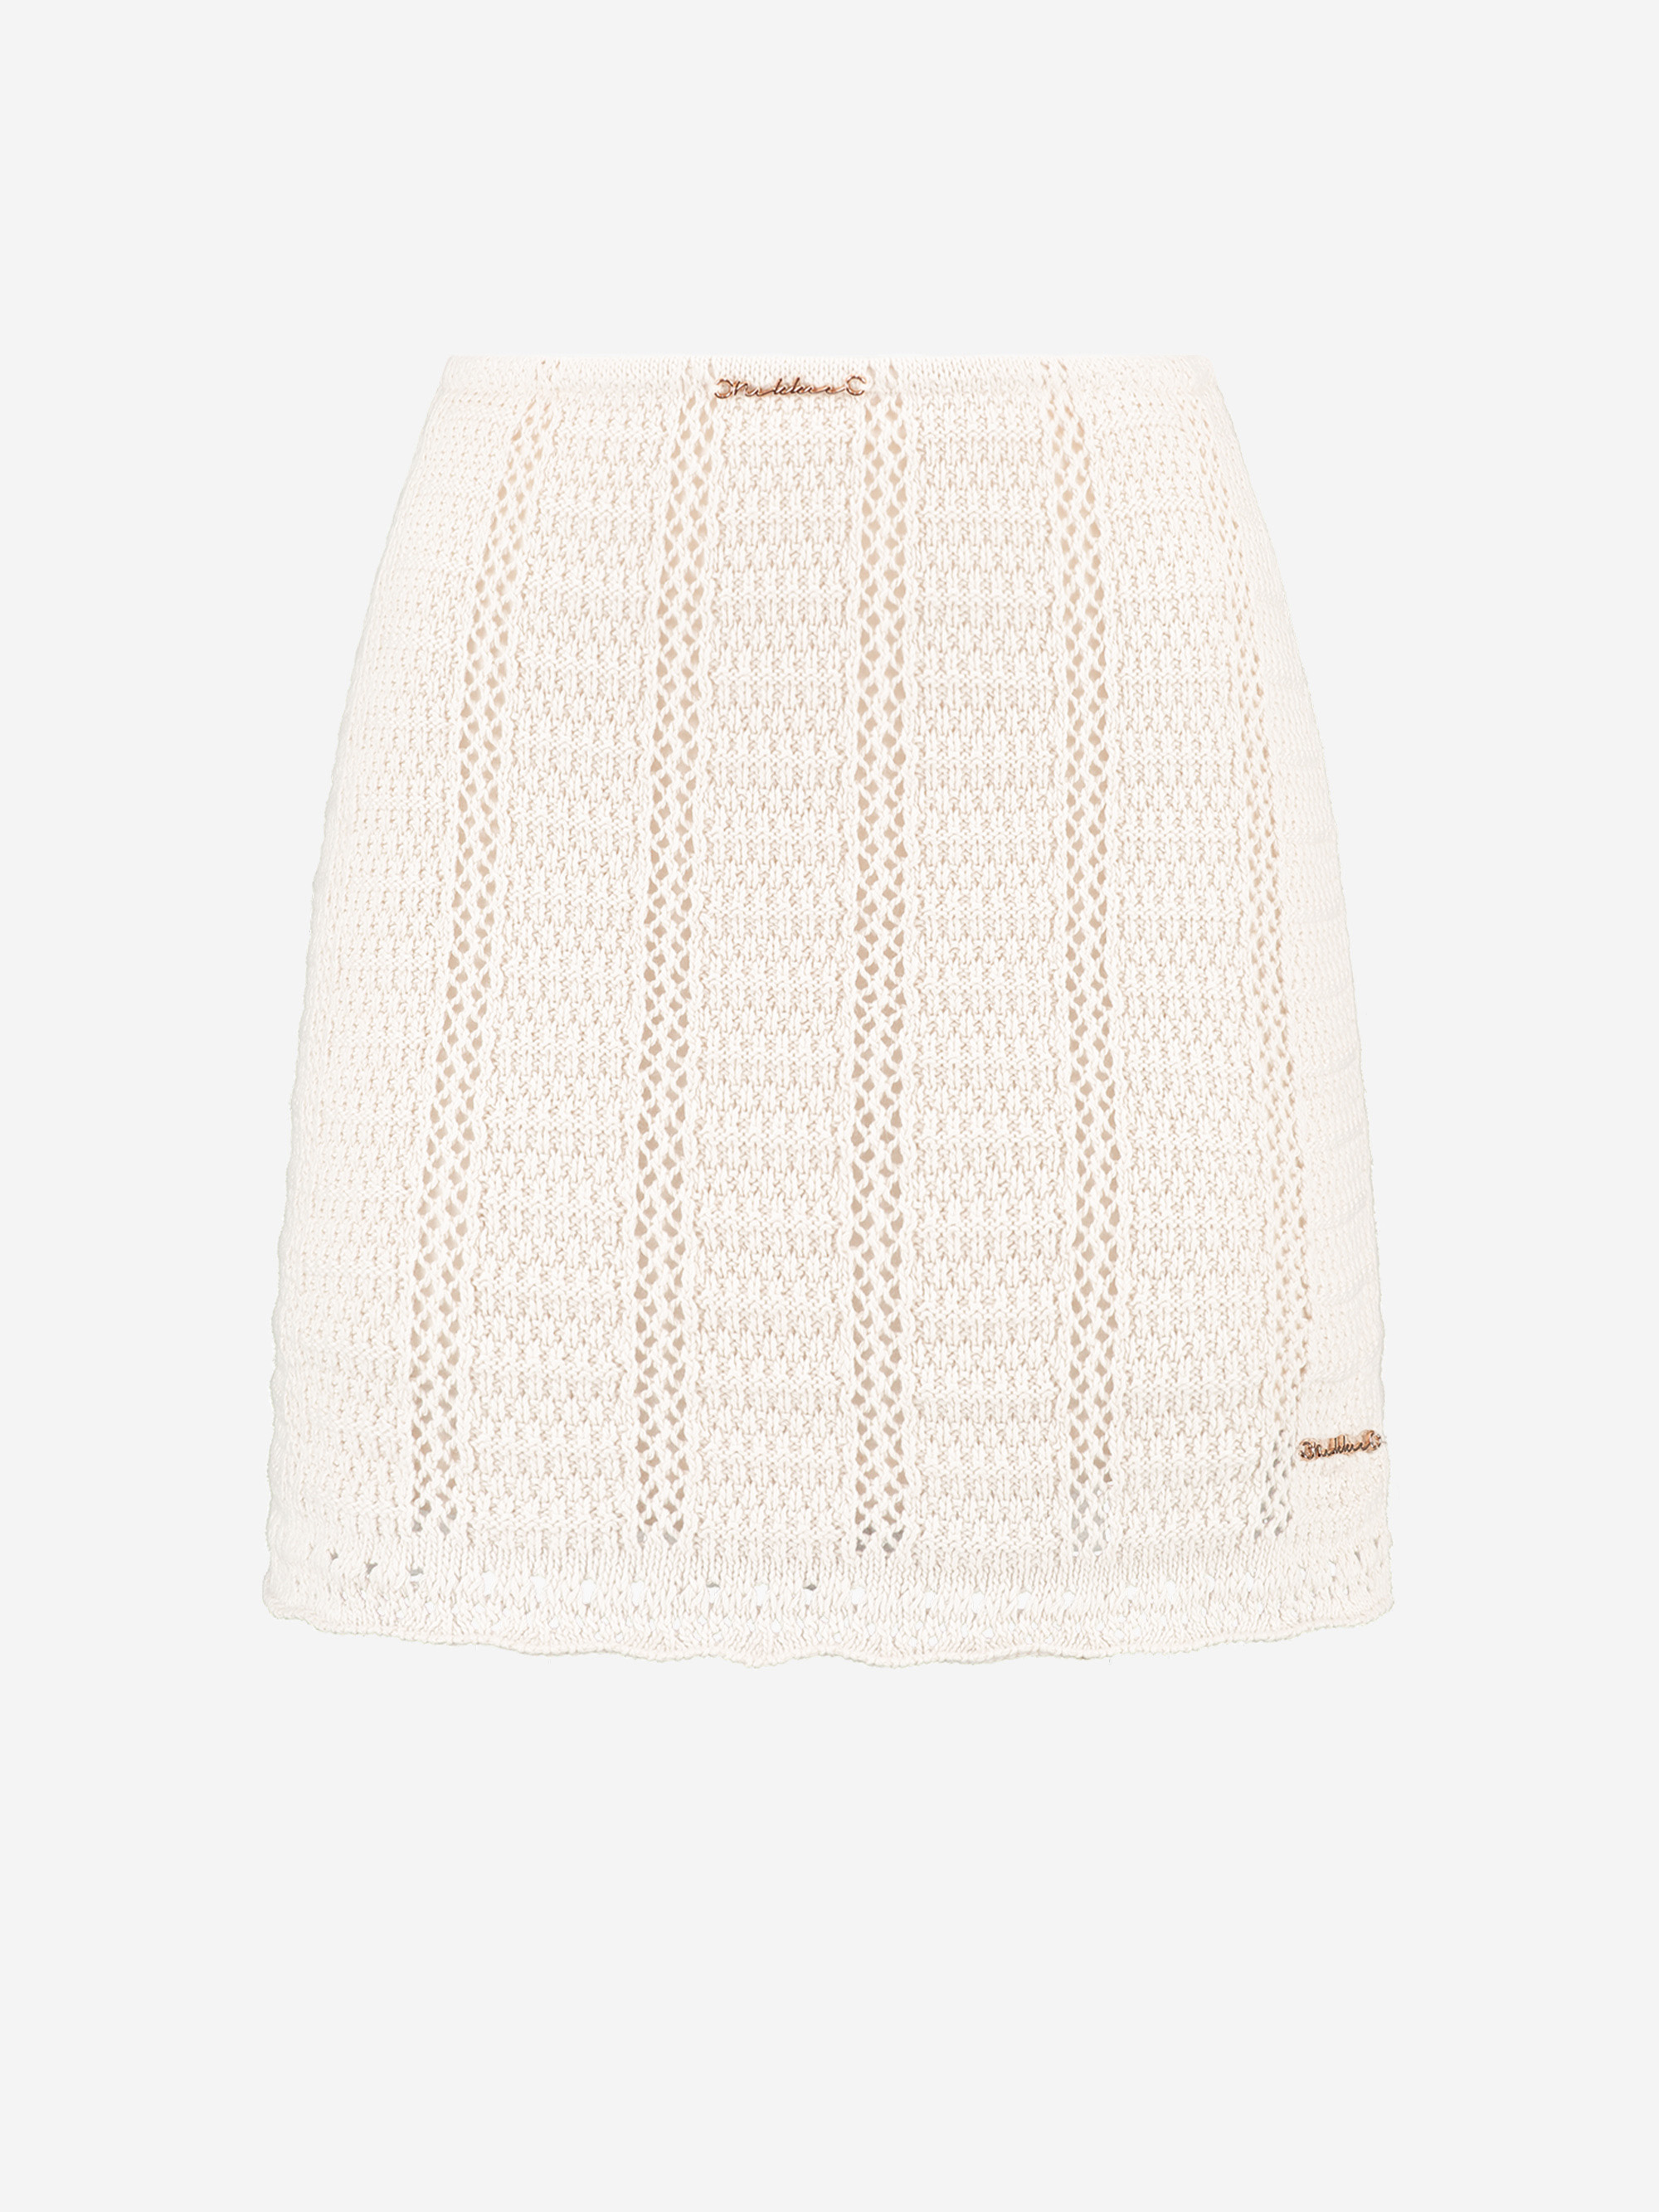 Skirt with crochet